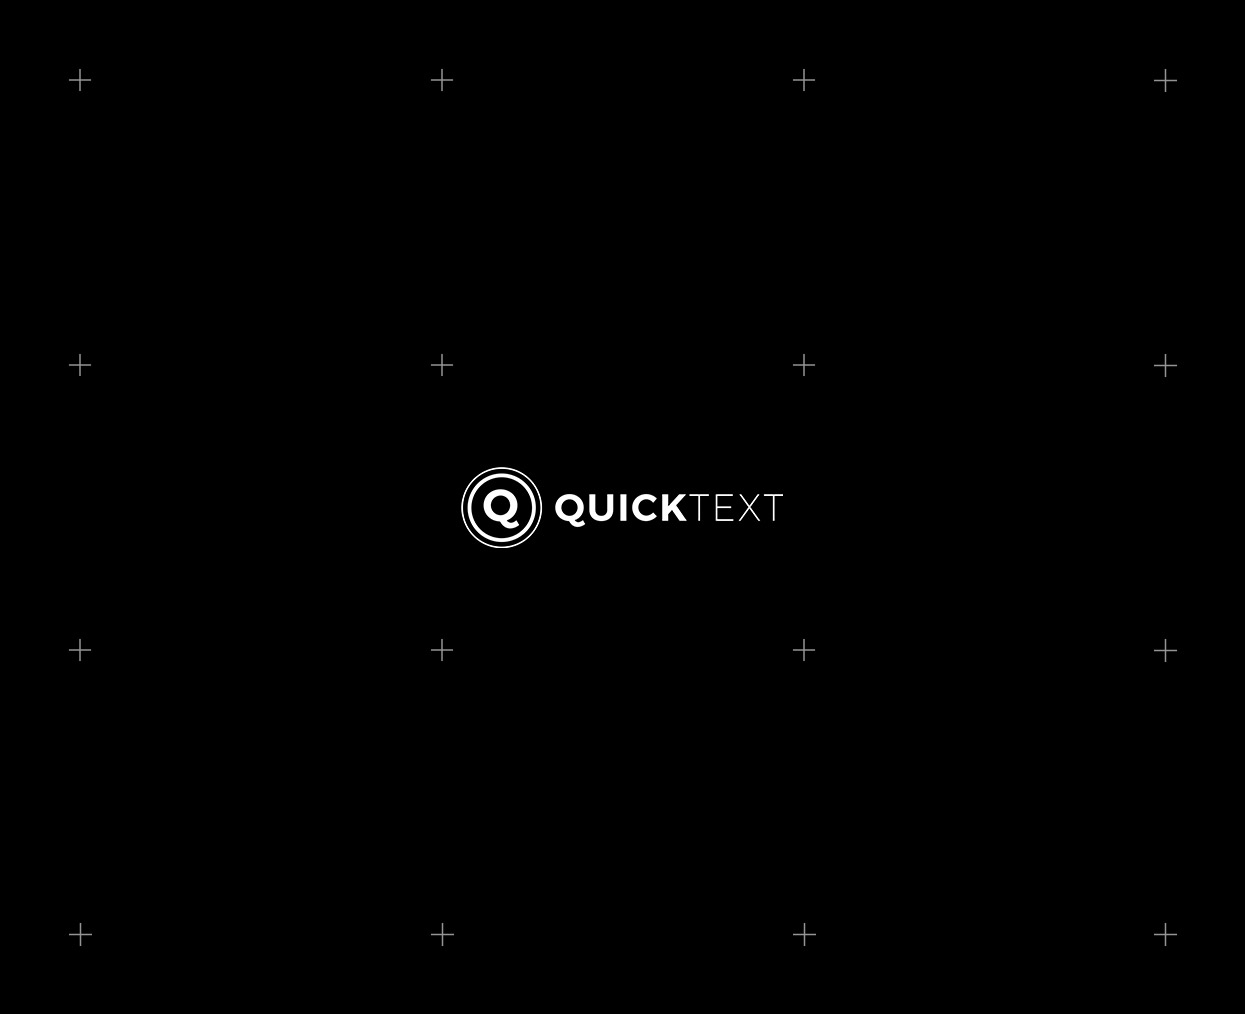 Quicktext_830x66